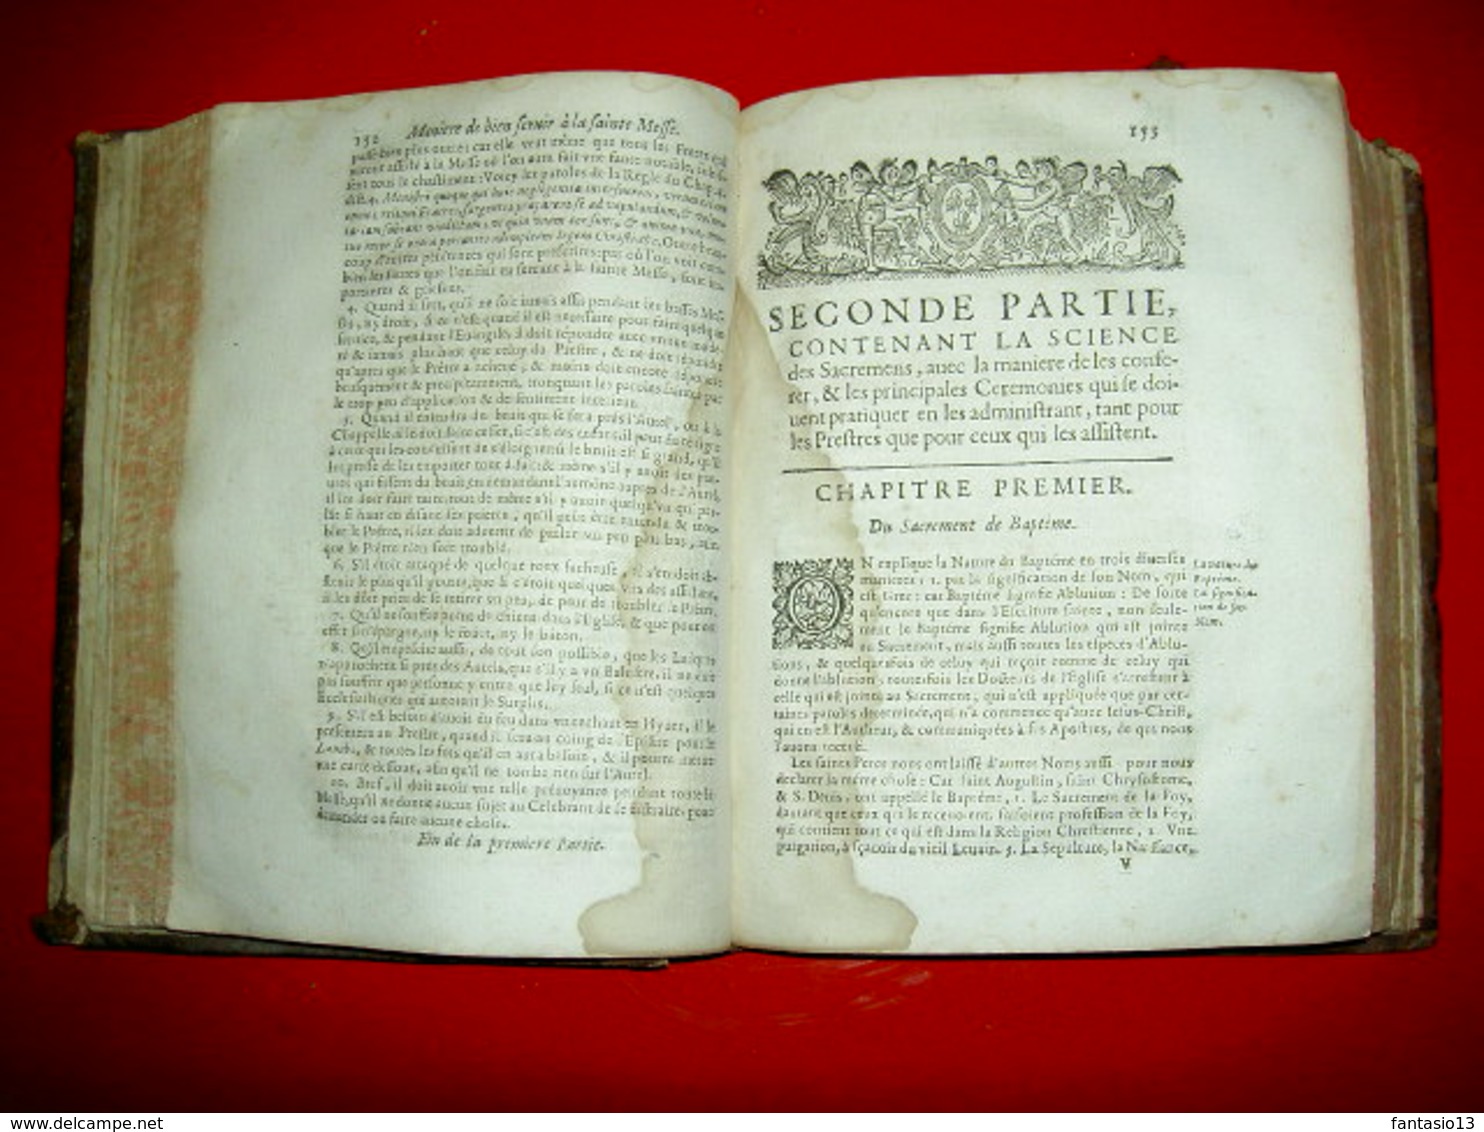 Le parfaict ecclésiastique ou Diverses instructions sur fonctions cléricales A Lyon chez Antoine Cellier MDCLXXVI 1676